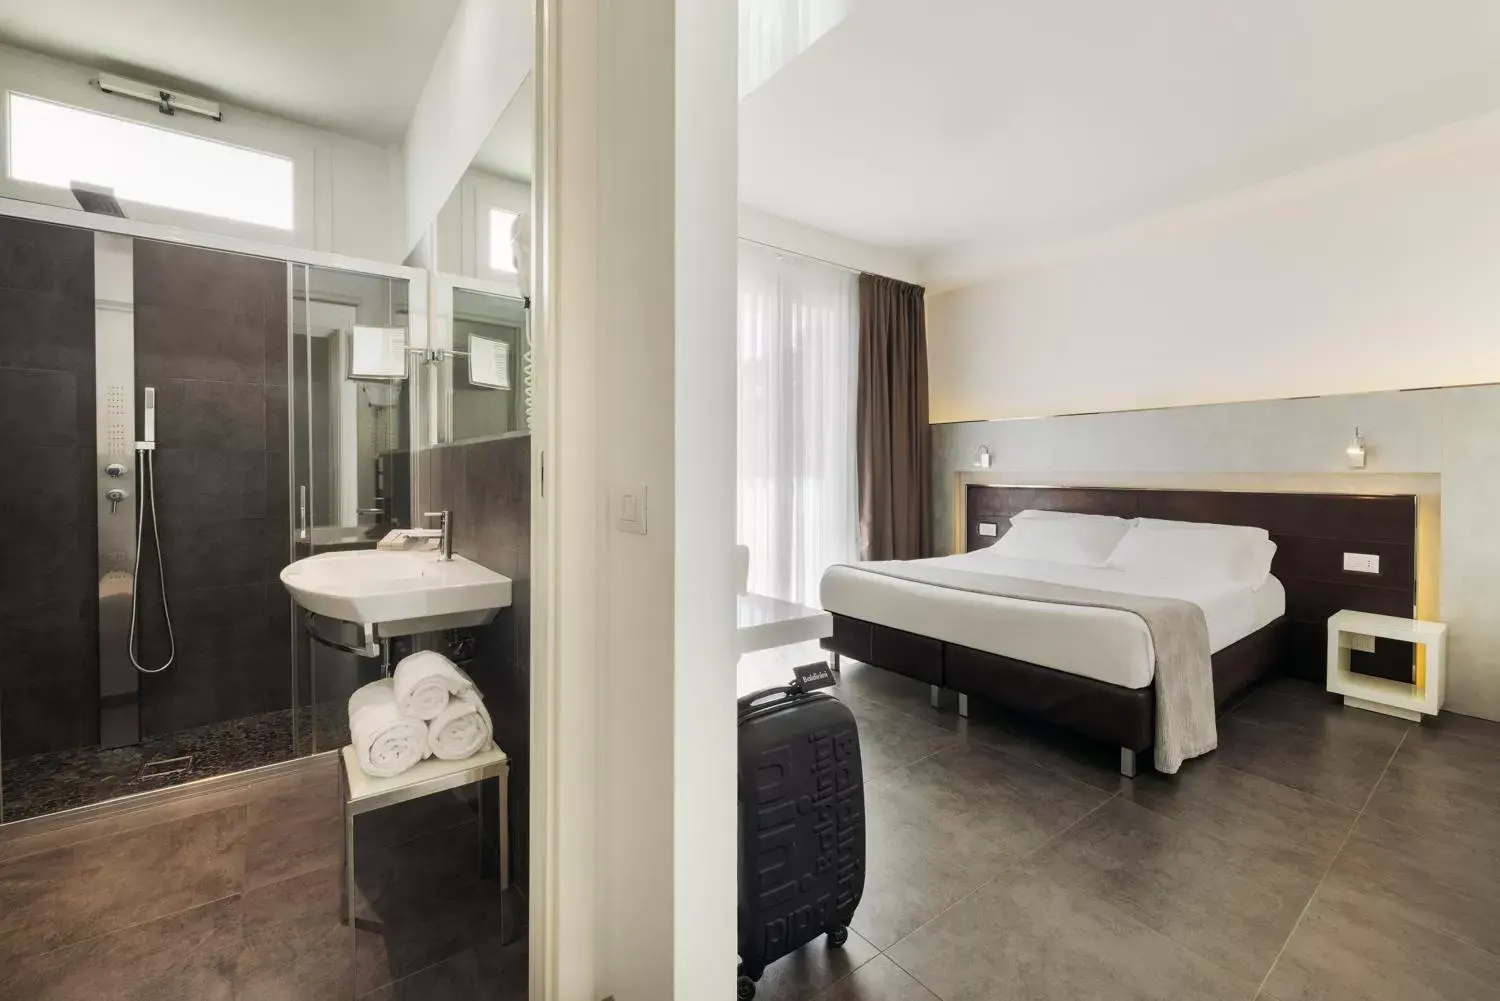 Photo of the whole room, Bathroom in Baldinini Hotel